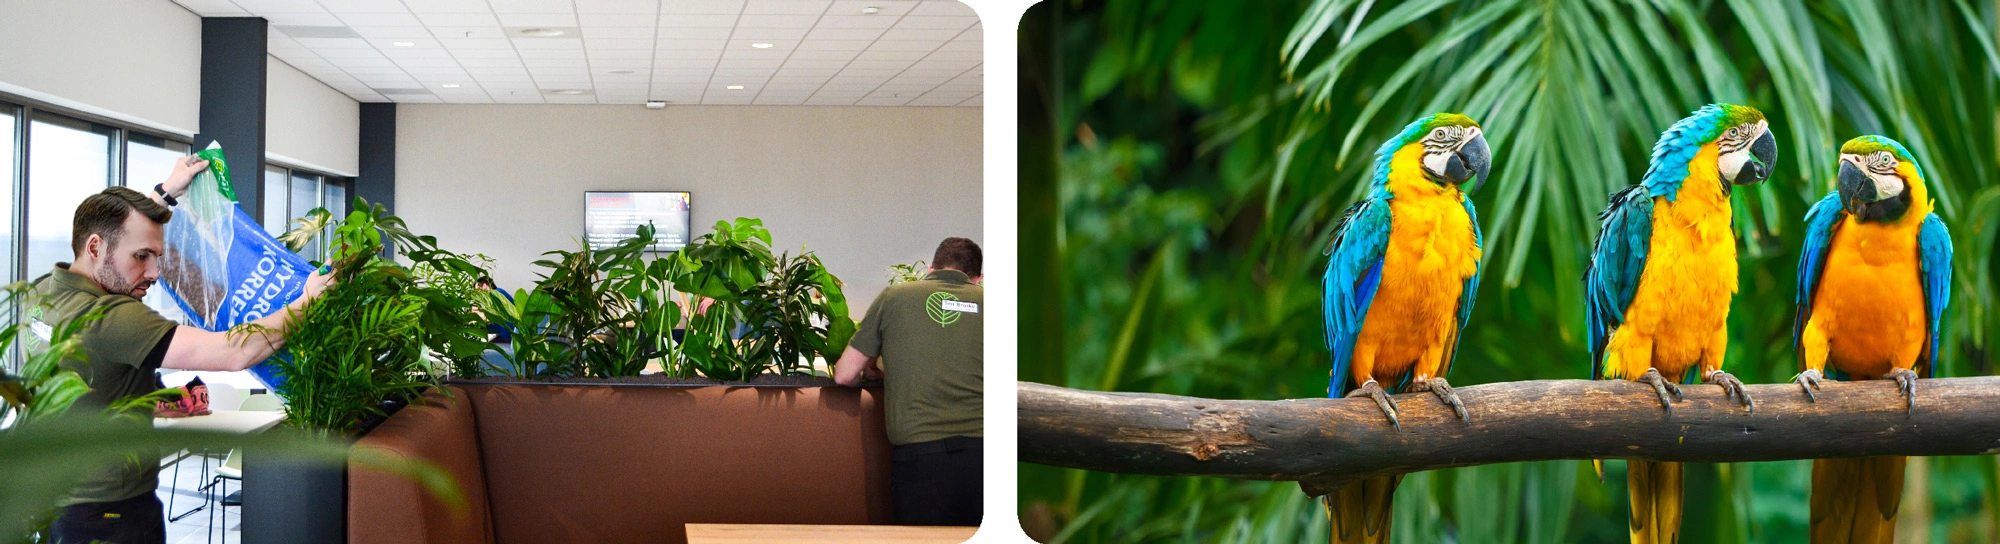 PSO medewerkers aan het werk en adoptie regenwoud